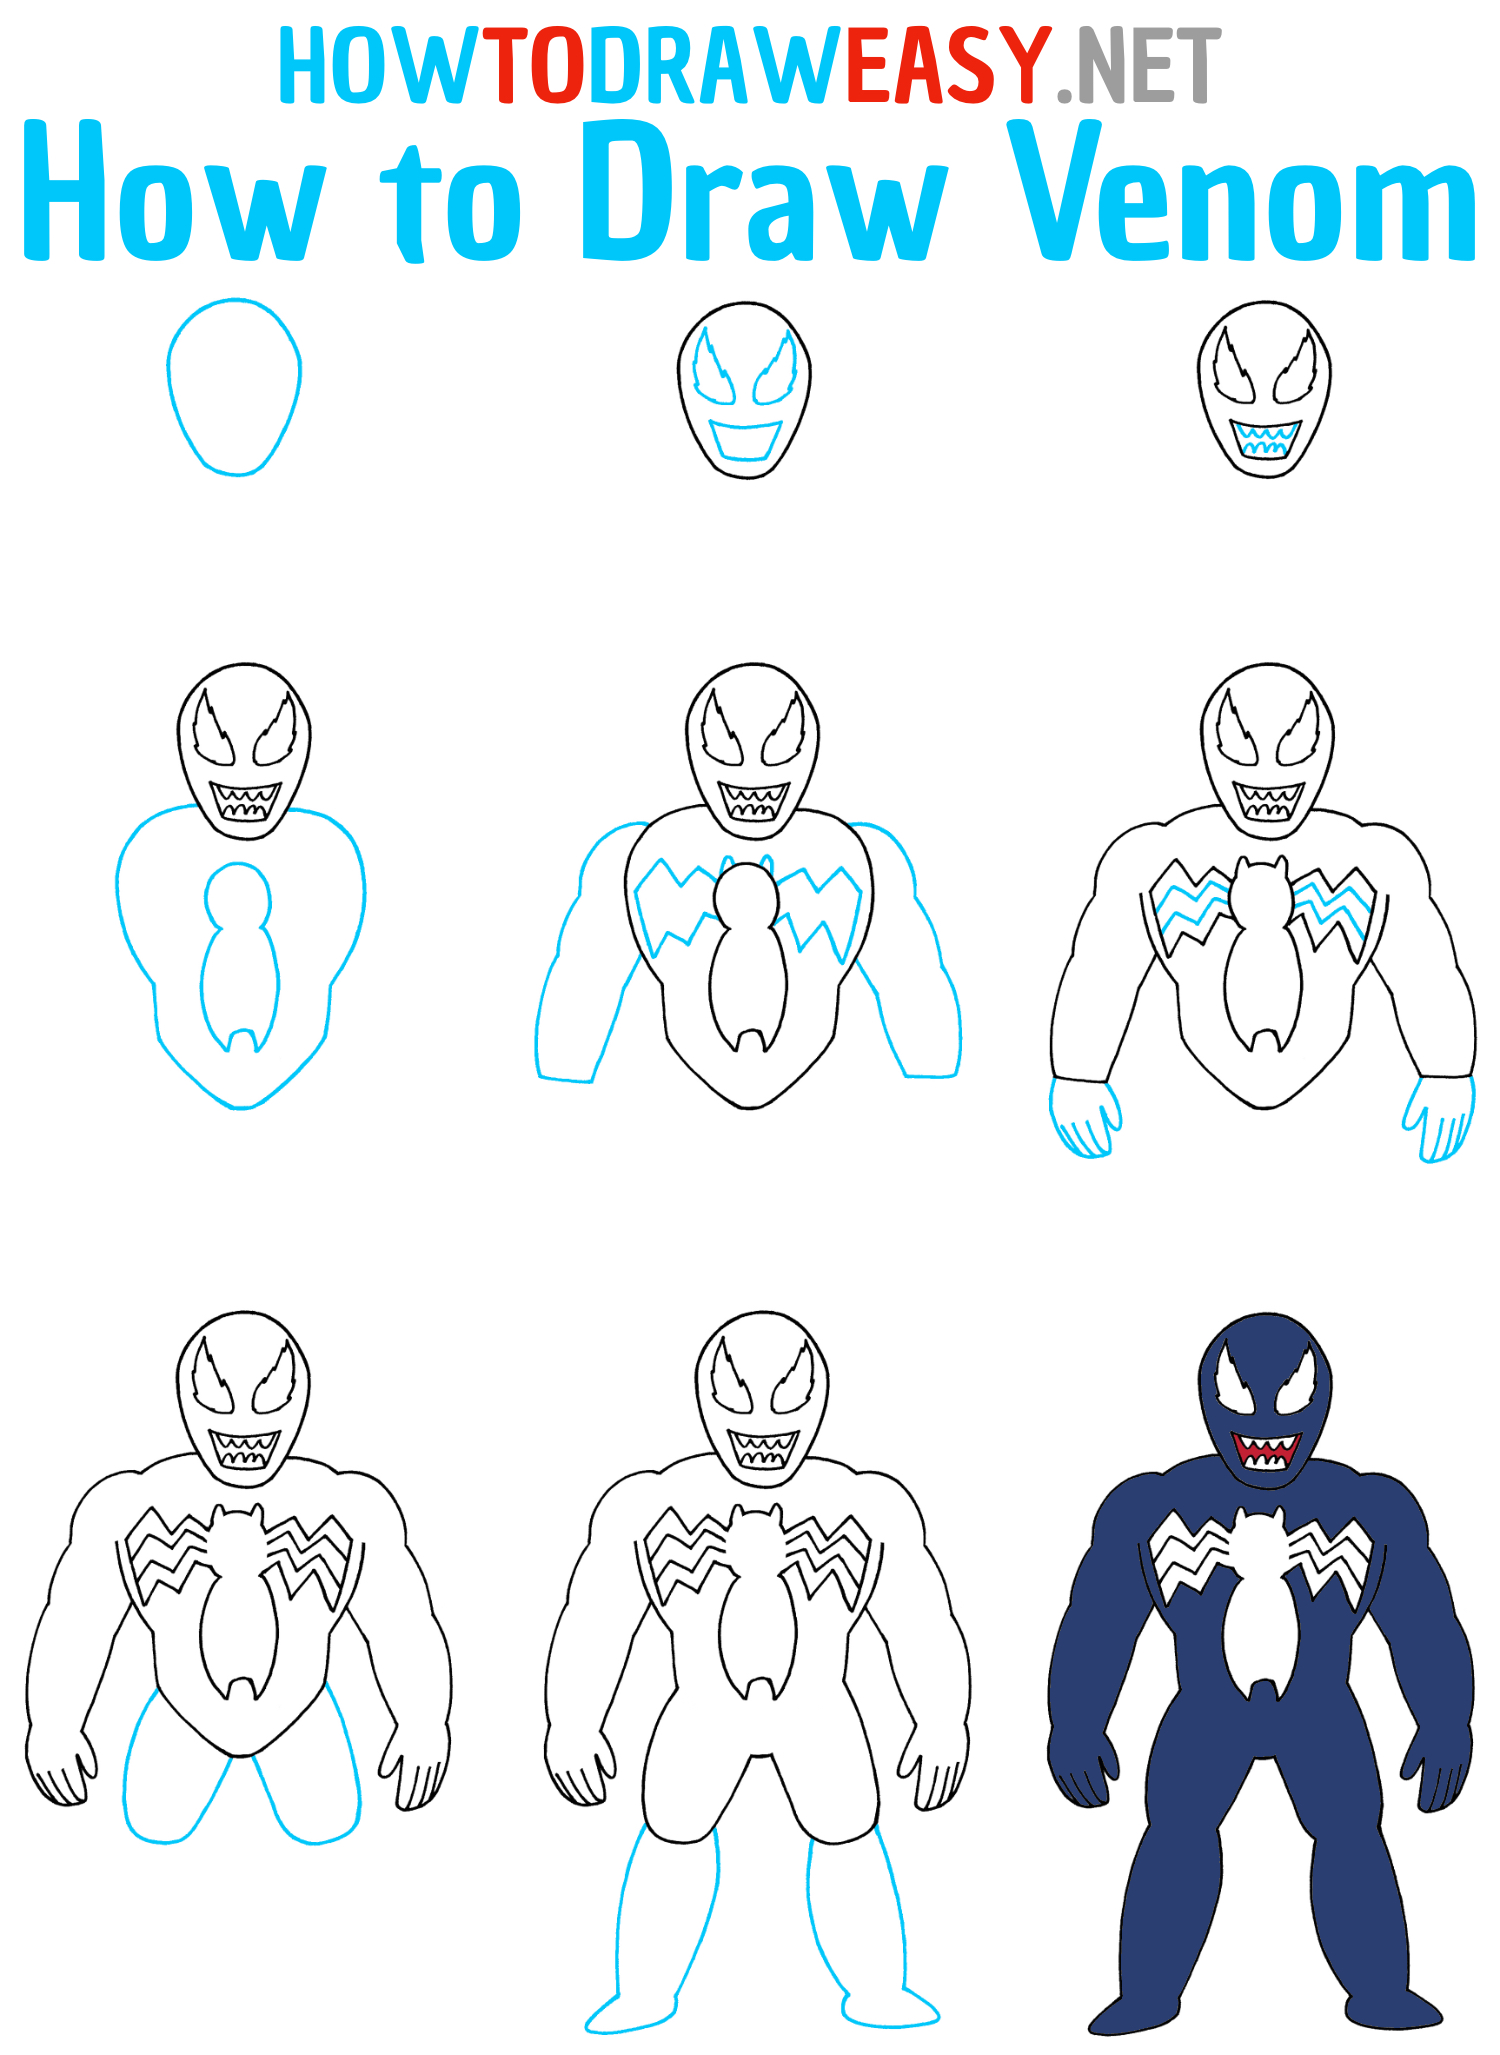 How to Draw Venom Step by Step